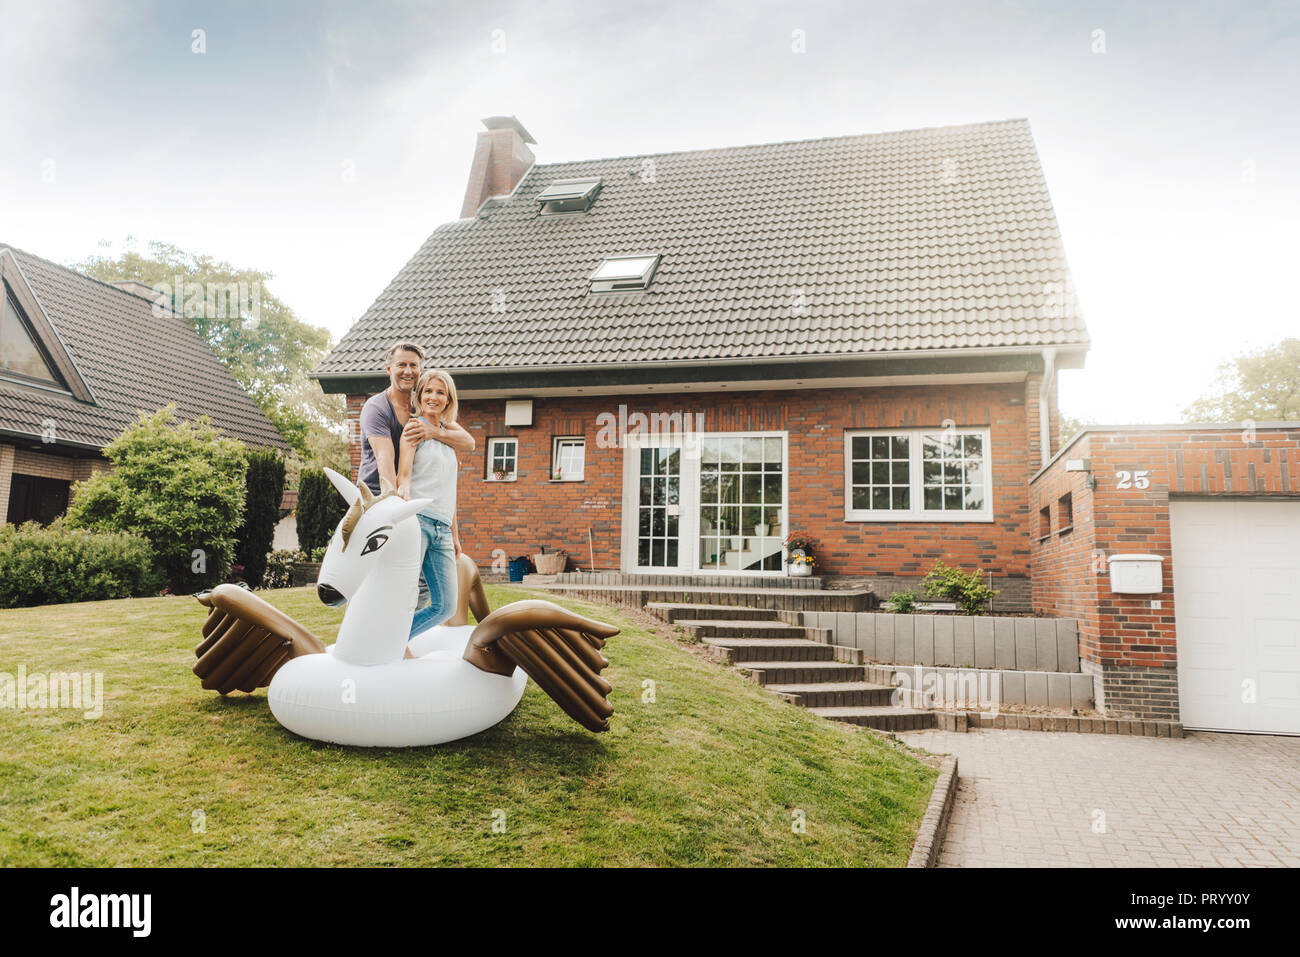 Portrait of smiling mature couple avec piscine gonflable jouet dans jardin de leur maison Banque D'Images